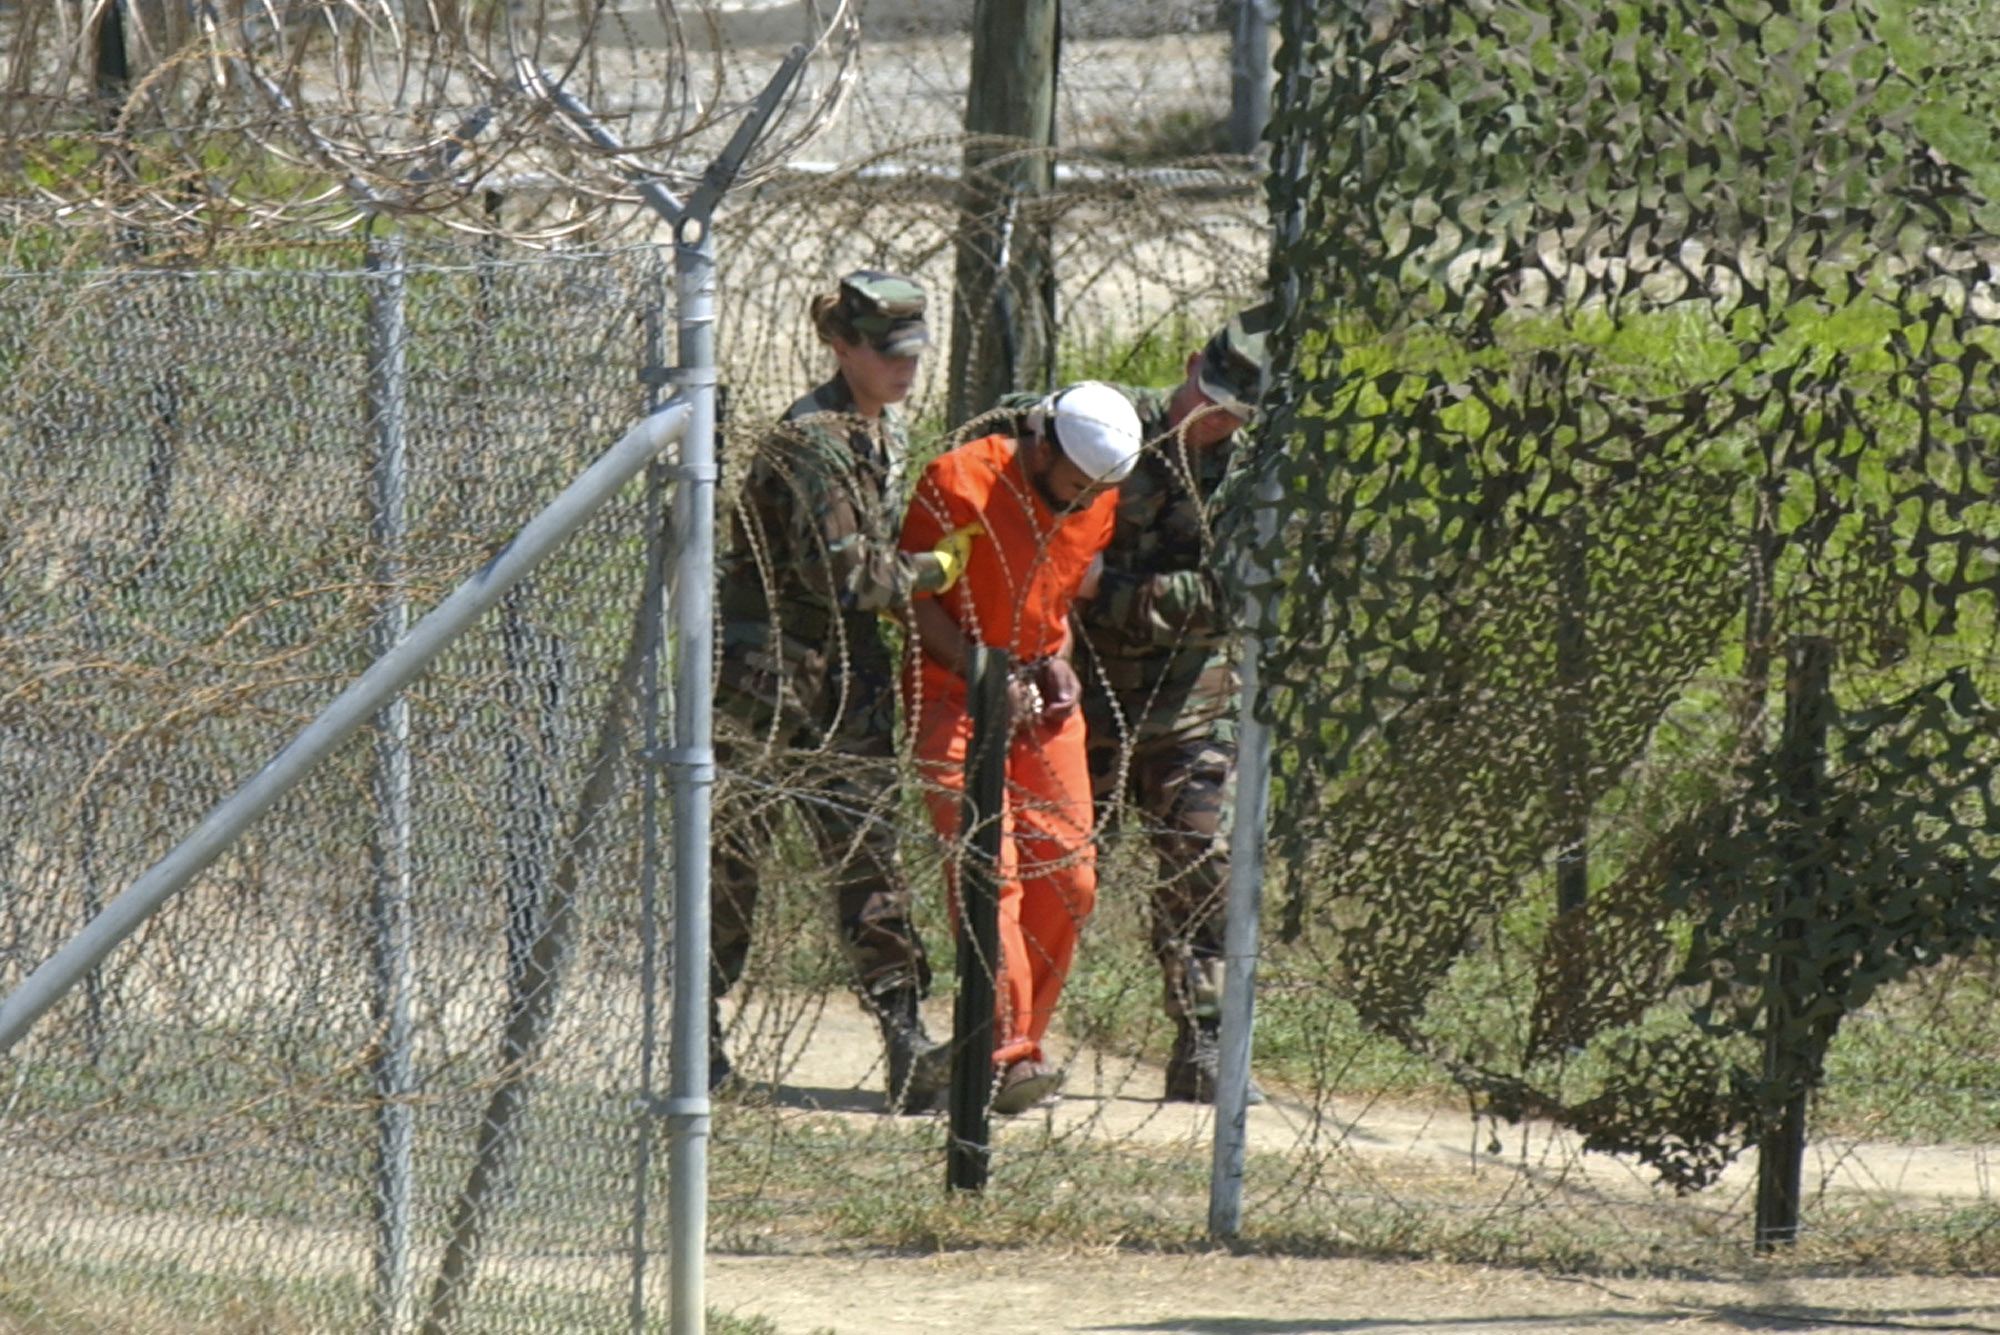 Endast sex av de sammanlagt 779 fångarna på Guantanamo har dömts skyldiga av speciella militärtribunaler eller efter en uppgörelse.  